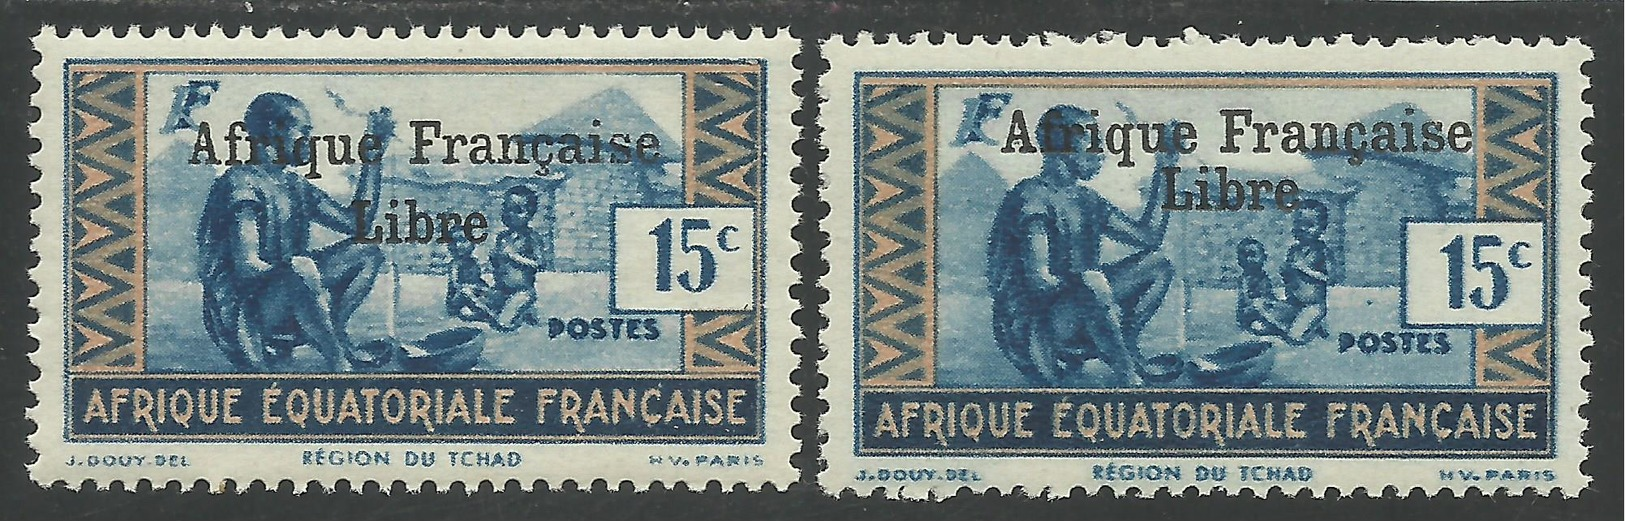 AFRIQUE EQUATORIALE FRANCAISE - AEF - A.E.F. - 1941 - YT 161b** - VARIETE - SURCHARGE ESPACEE - Neufs